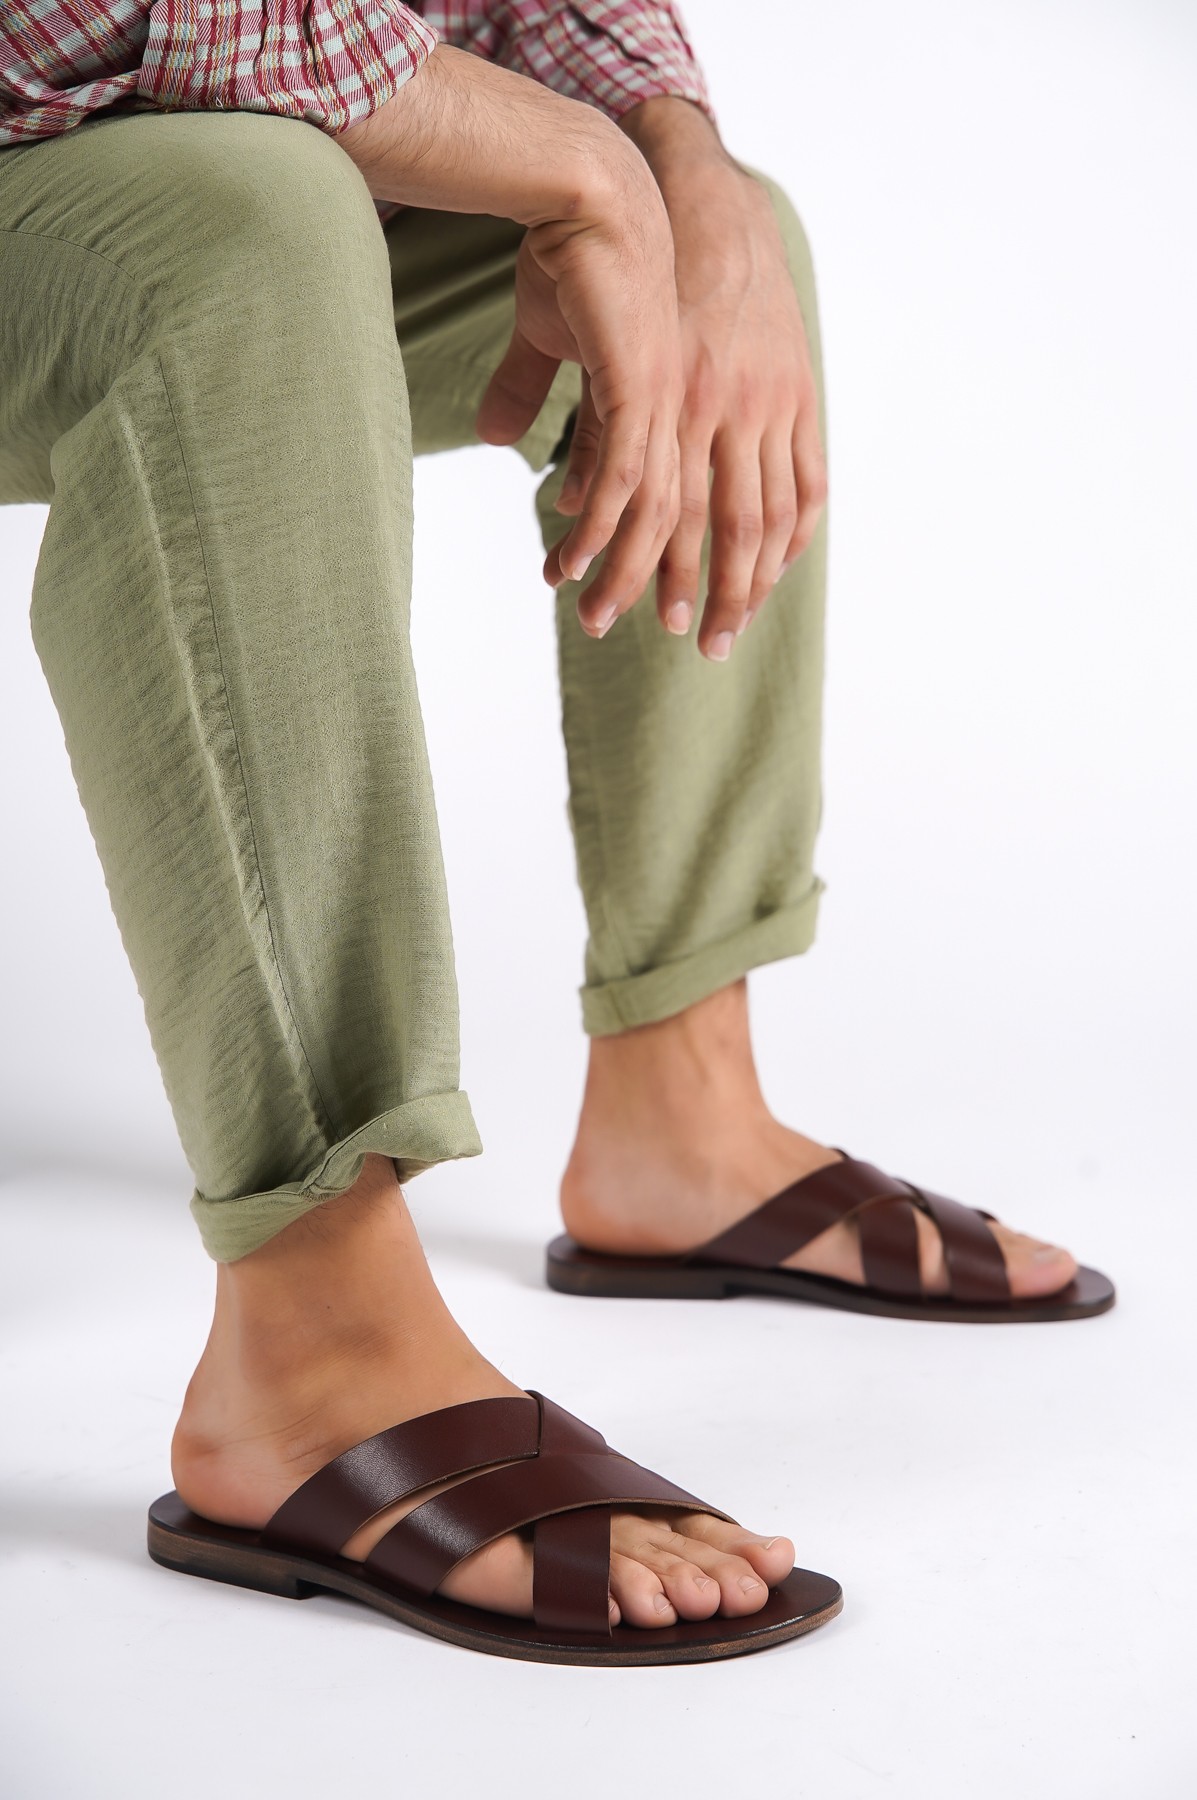 Sur Sandalet El Yapımı Kösele Erkek Bodrum Terlik - Kahverengi